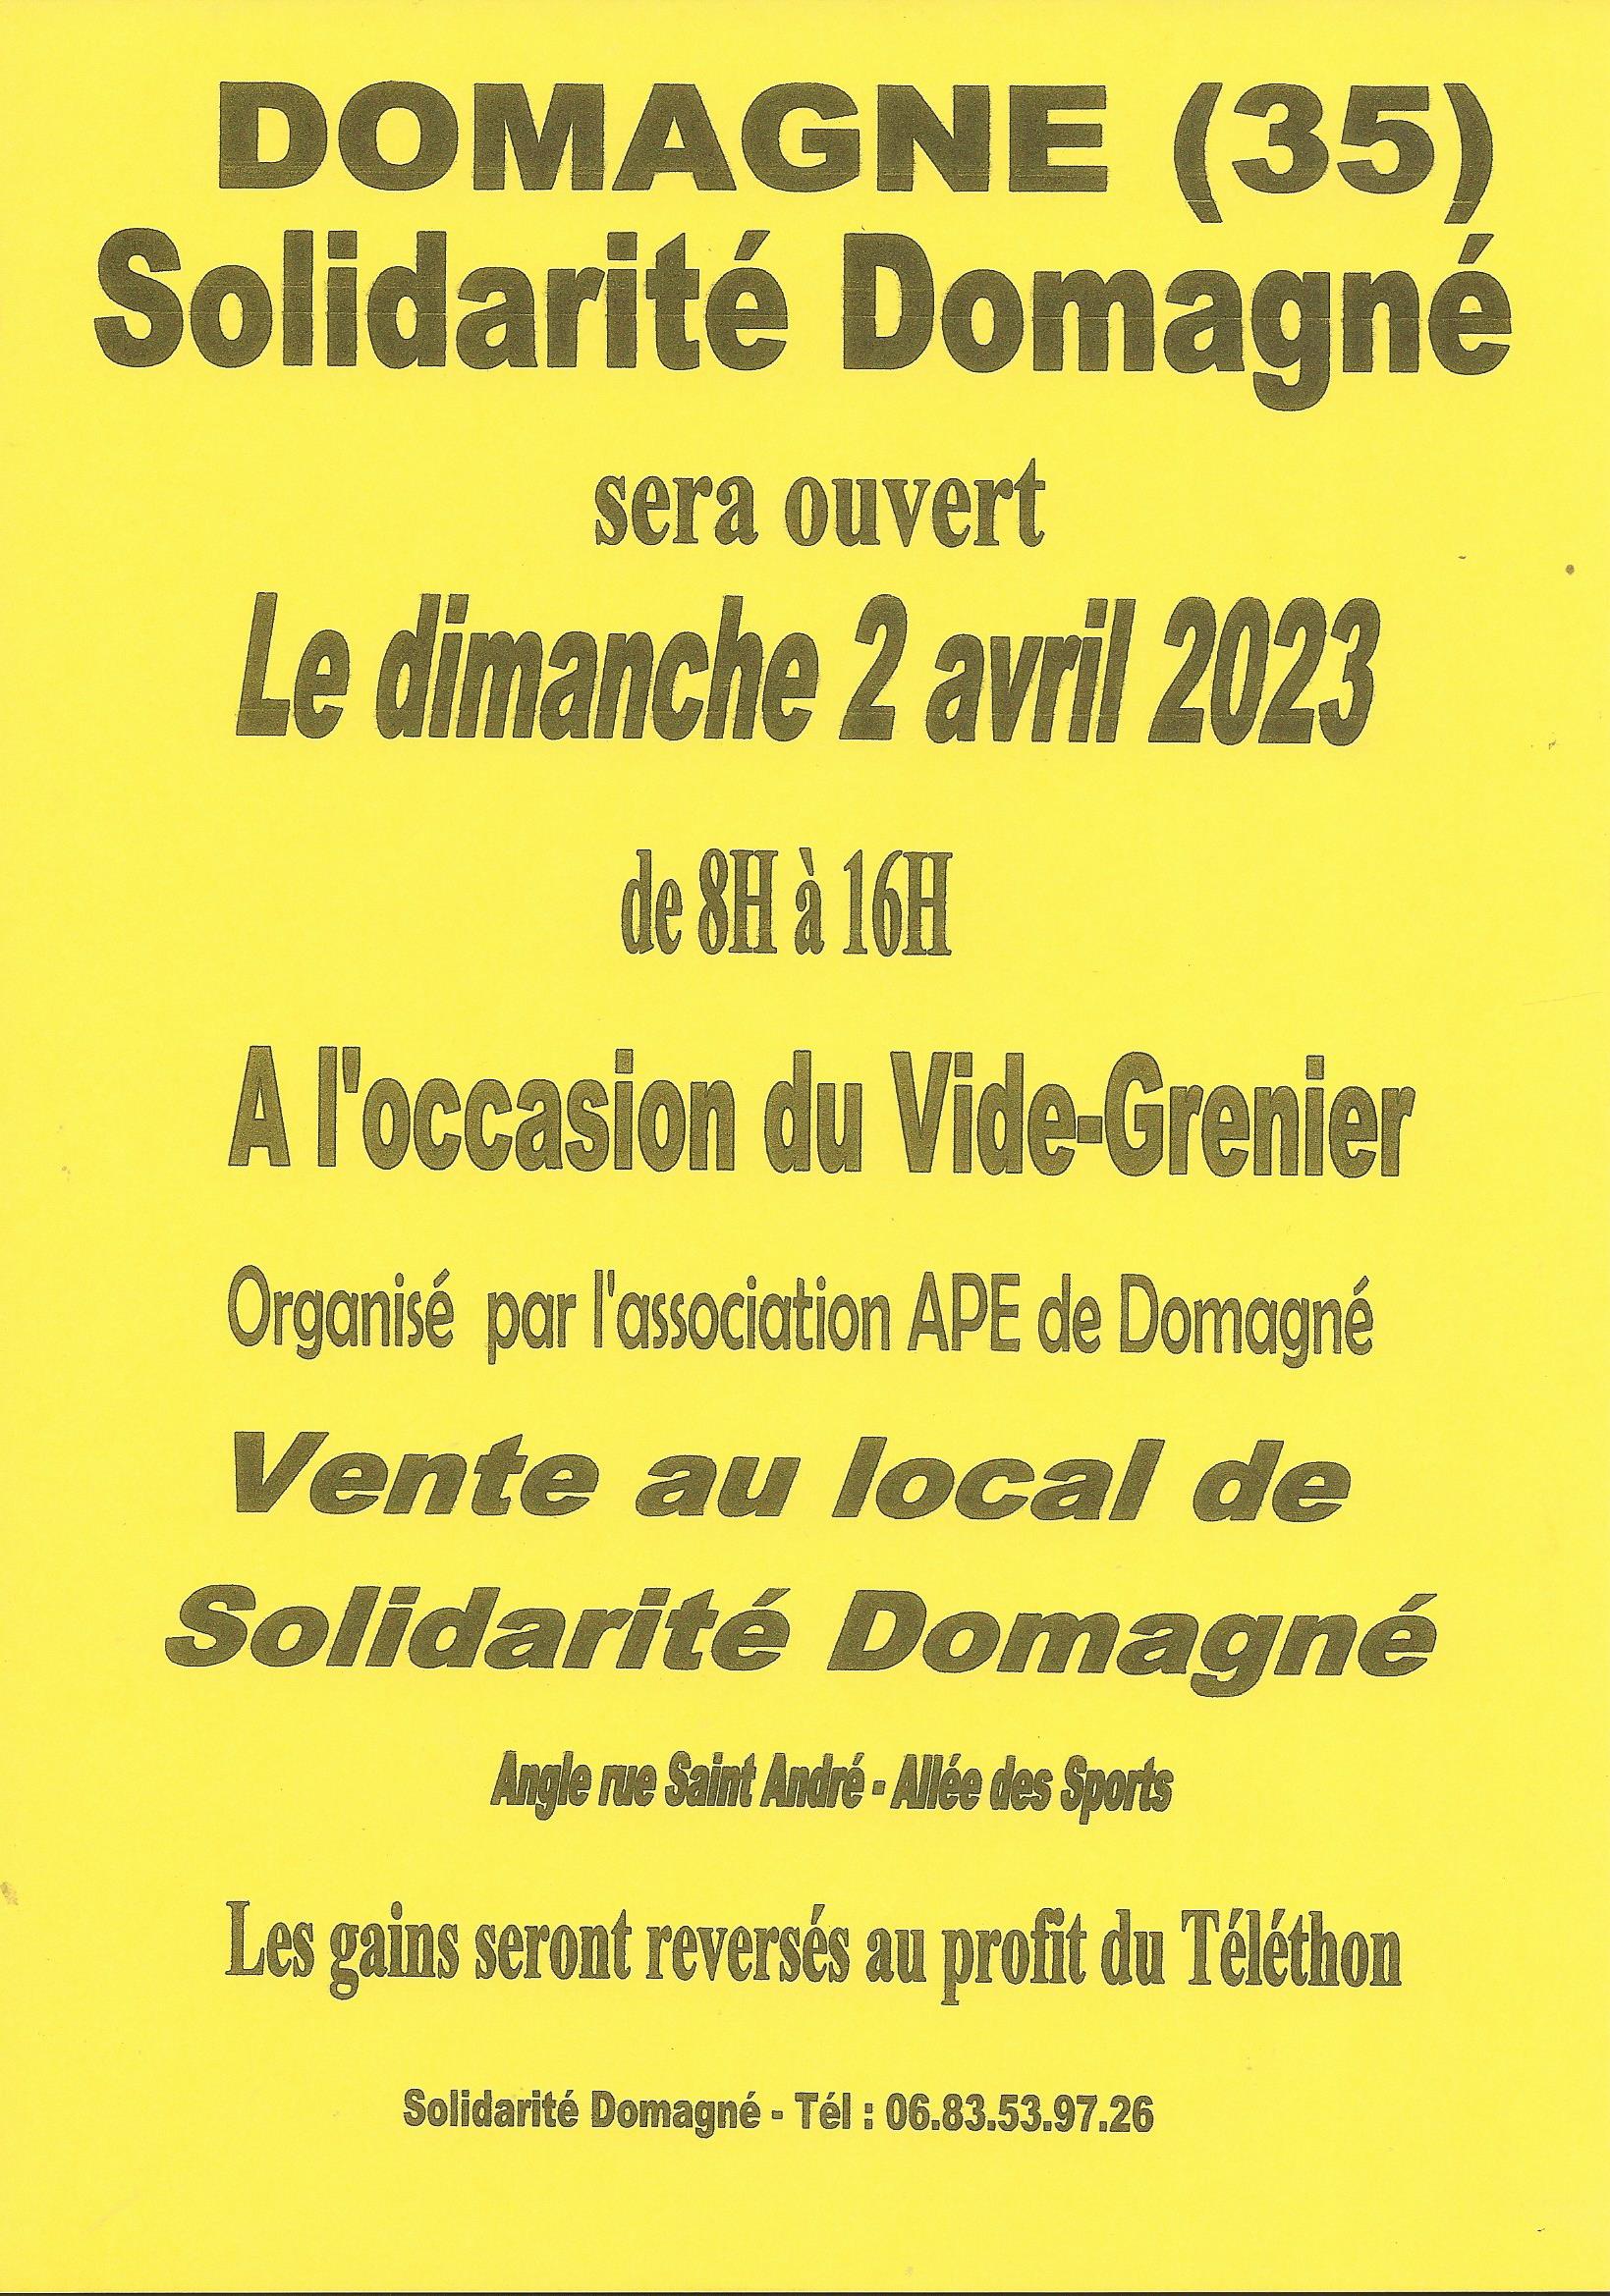 Solidarité Domagn ouverture du 2 avril 2023.jpg